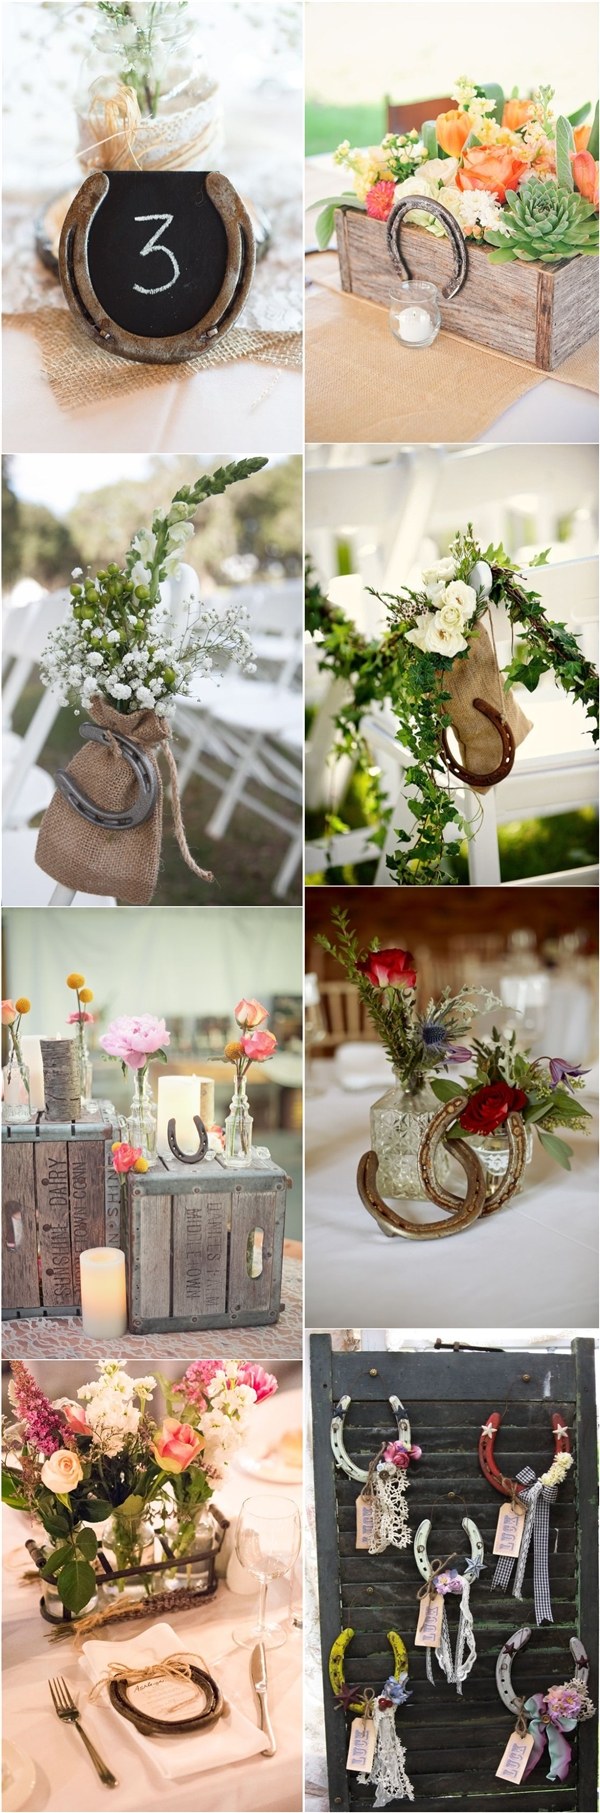 rustic country farm wedding ideas